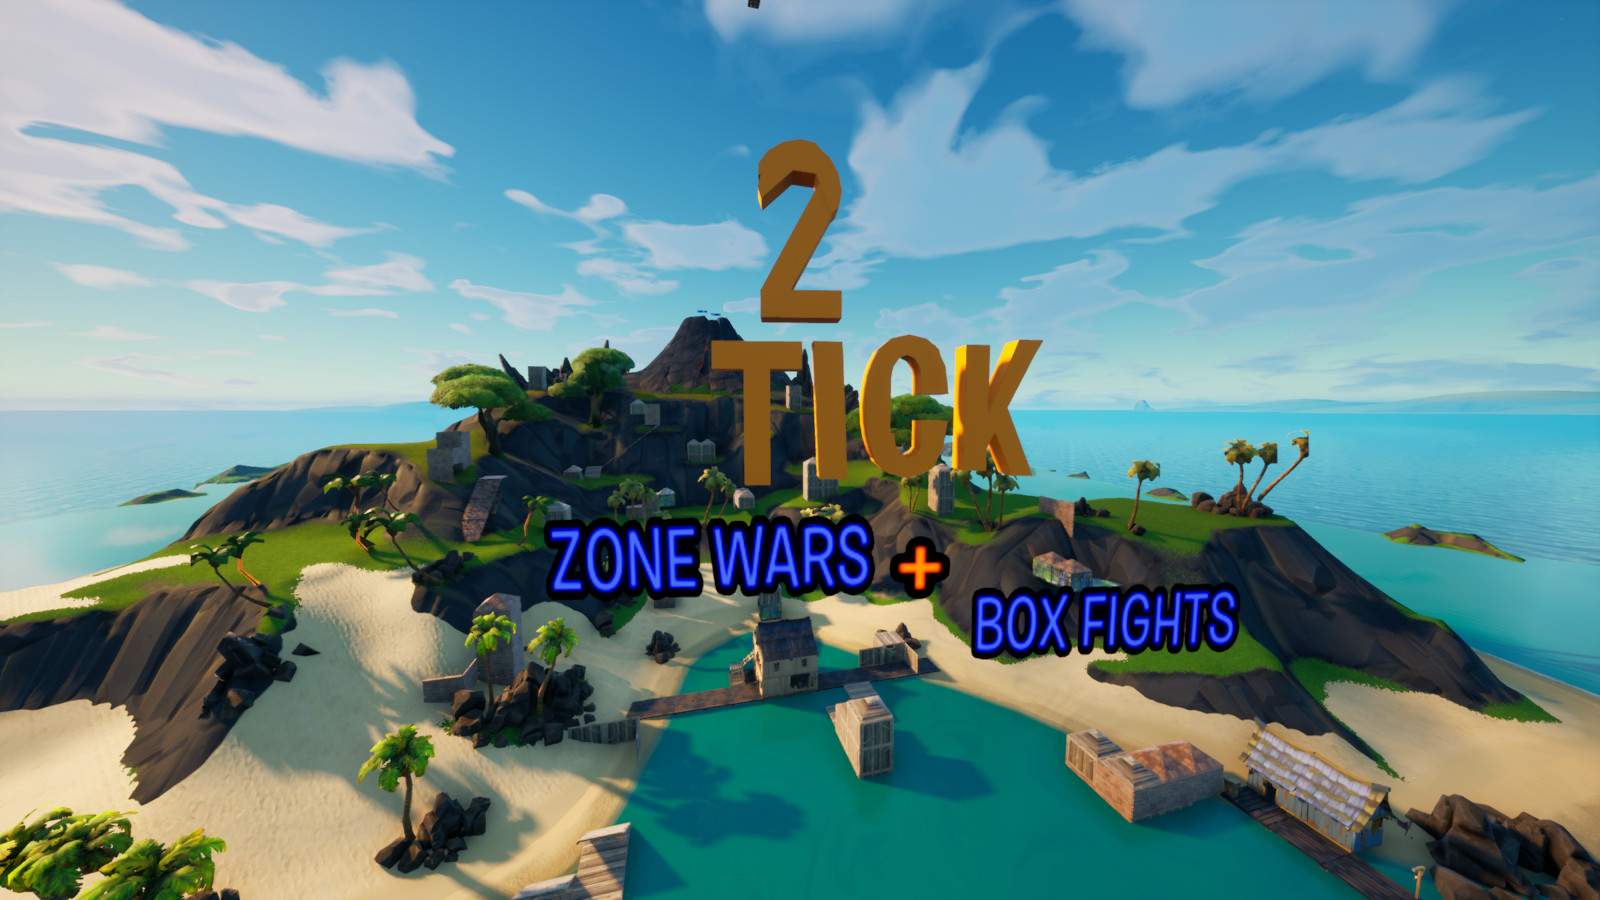 2 TICK [ZONE WARS + BOX FIGHTS]